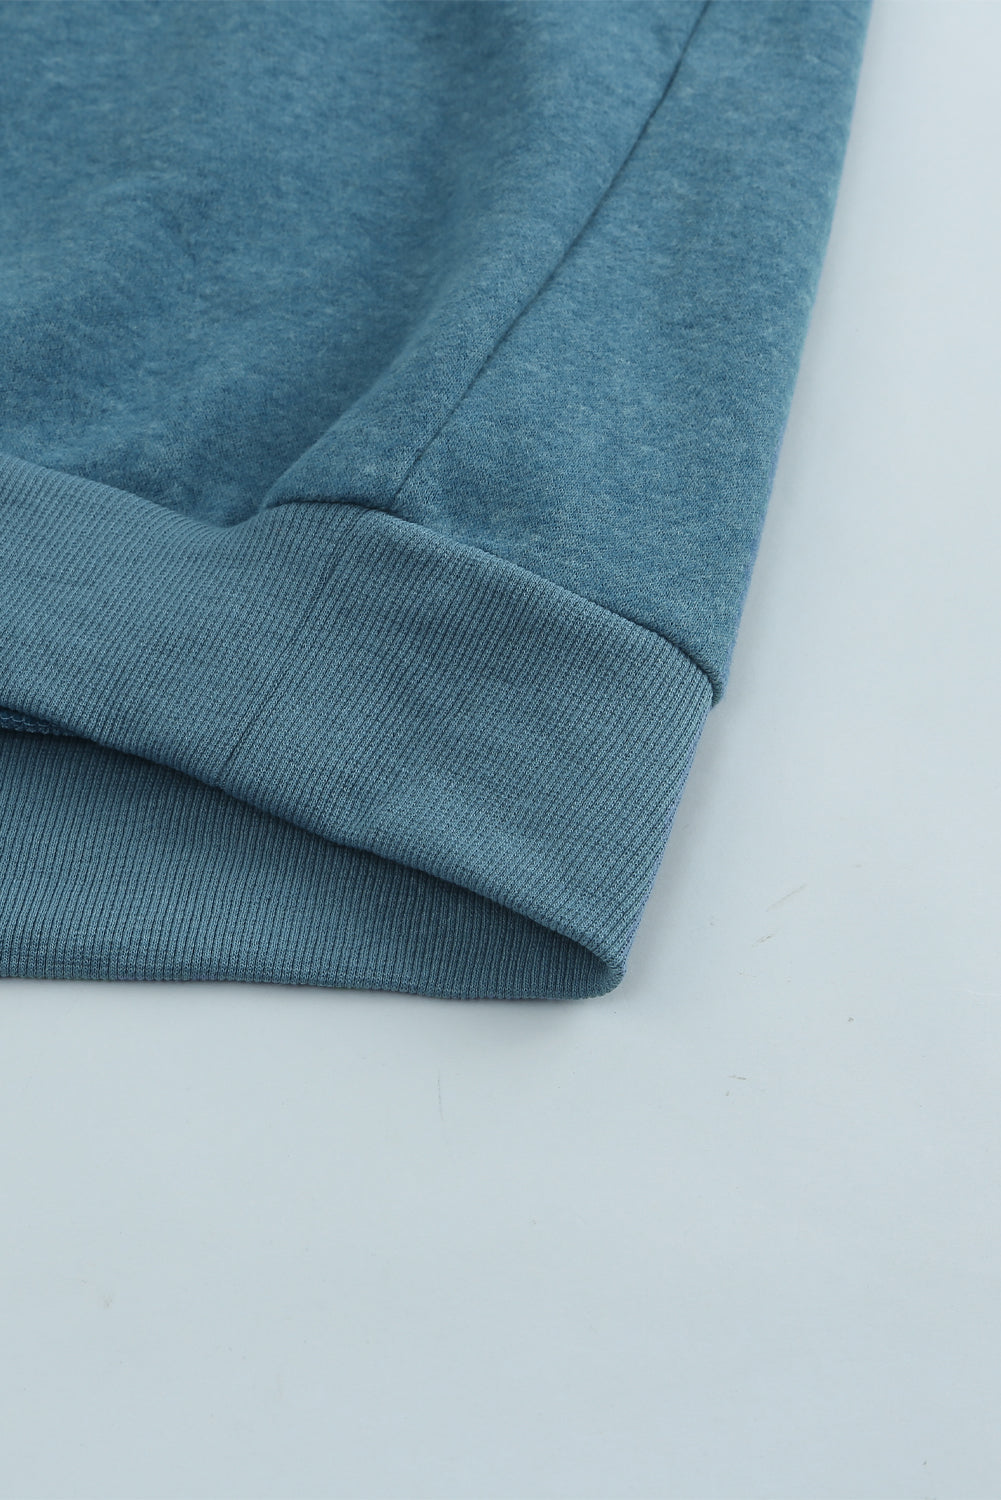 Sweat-shirt bleu à manches longues et blocs de couleurs